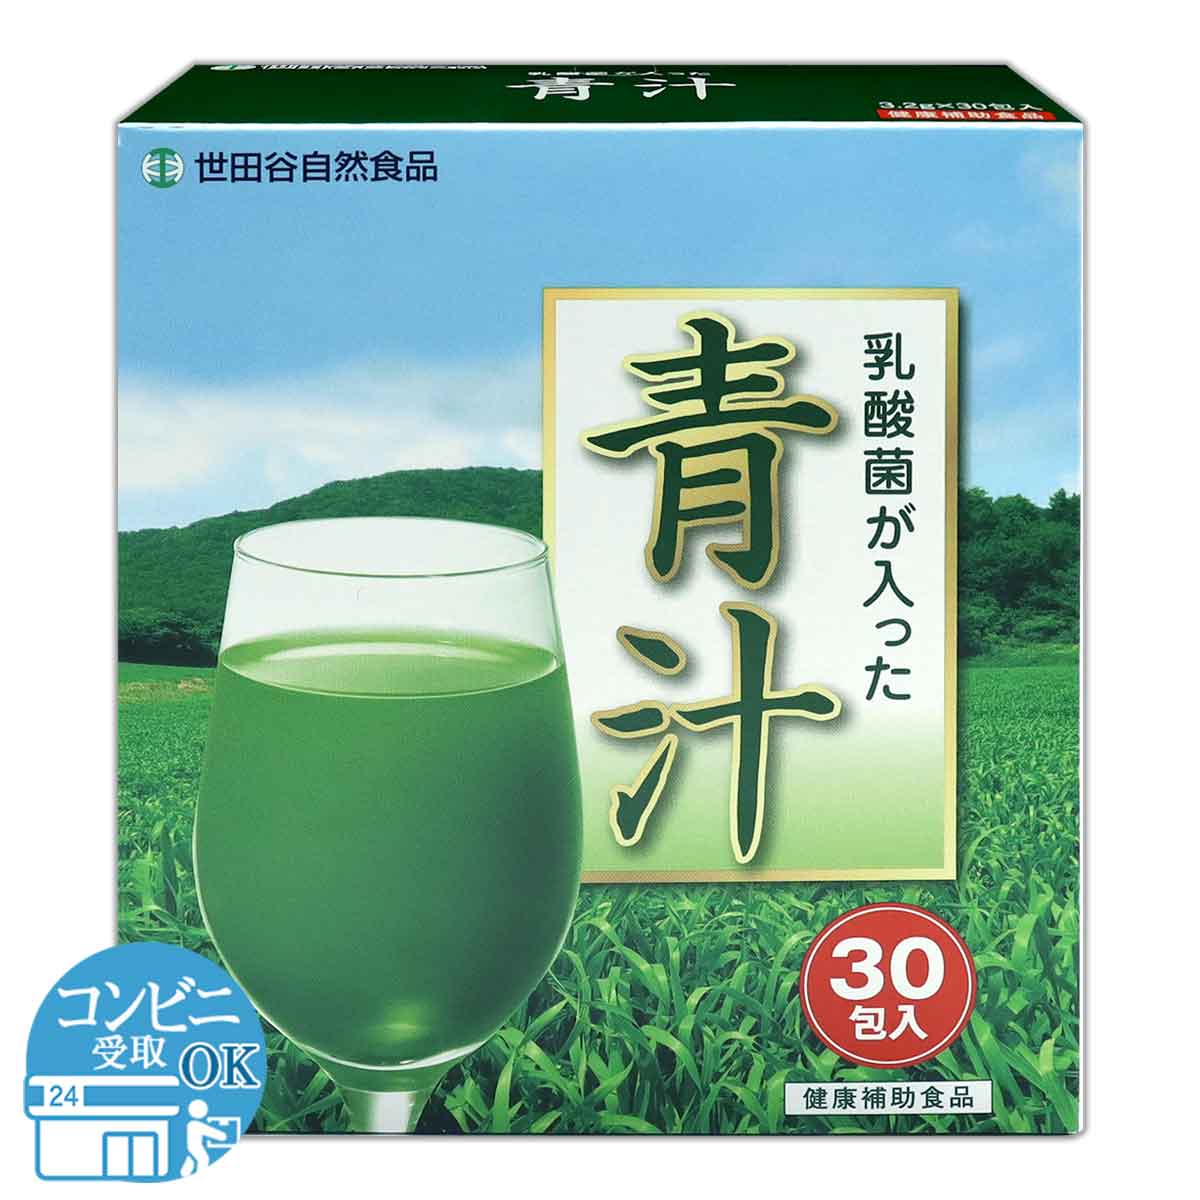 2箱セット 】 世田谷自然食品 乳酸菌が入った青汁 96g ( 3.2g×30